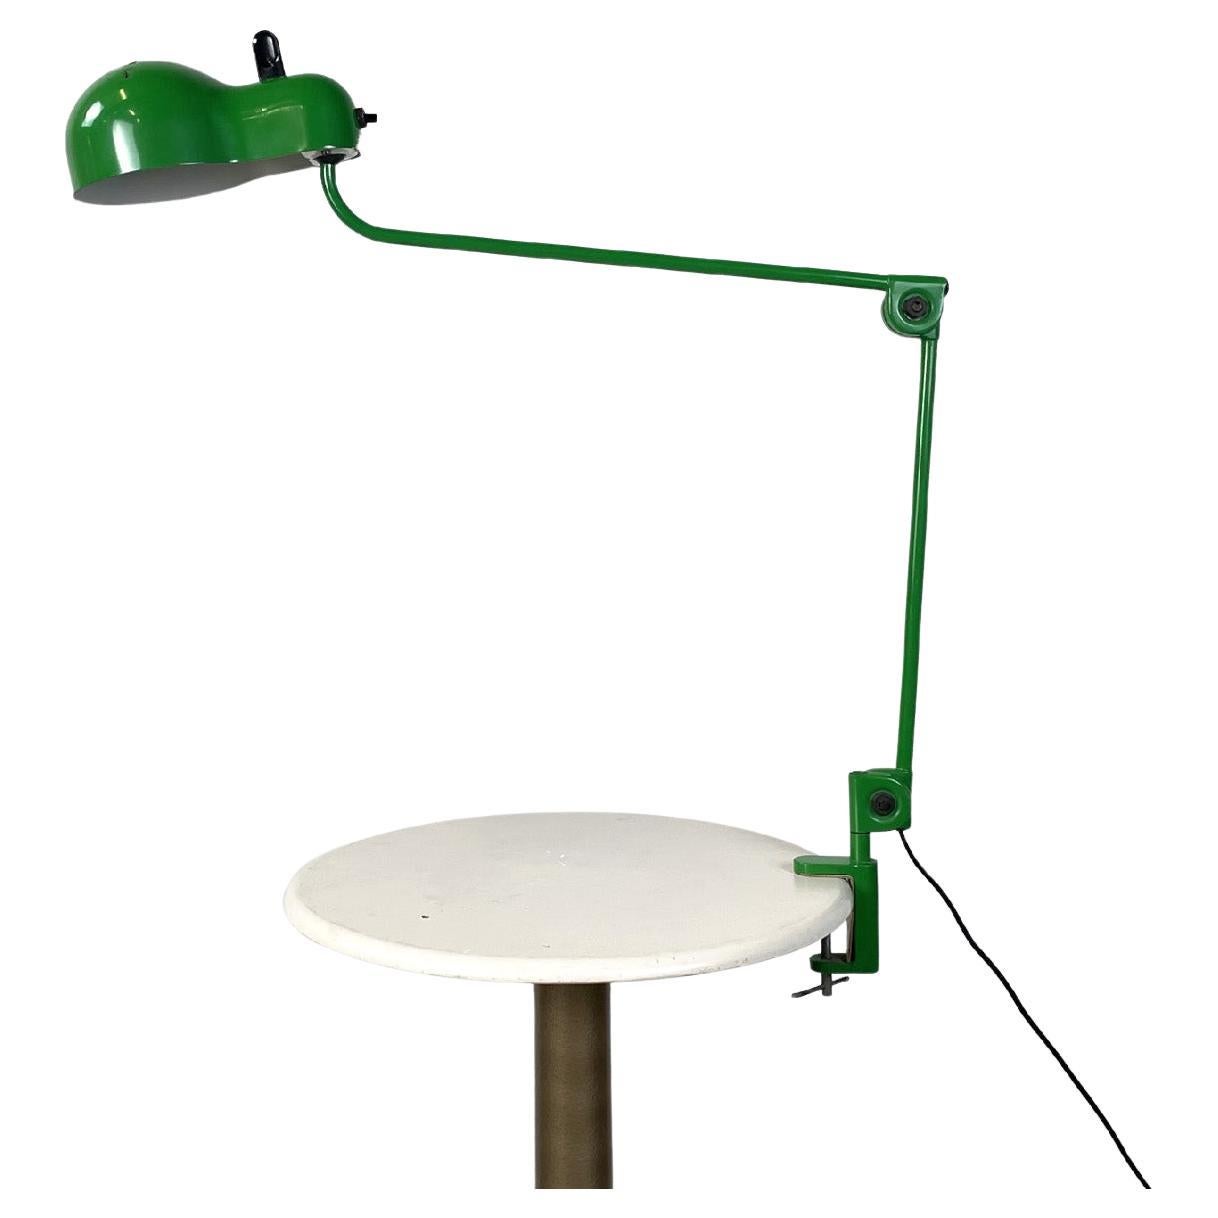 Italian modern green table lamp Topo by Joe Colombo for Stilnovo, 1970s For Sale